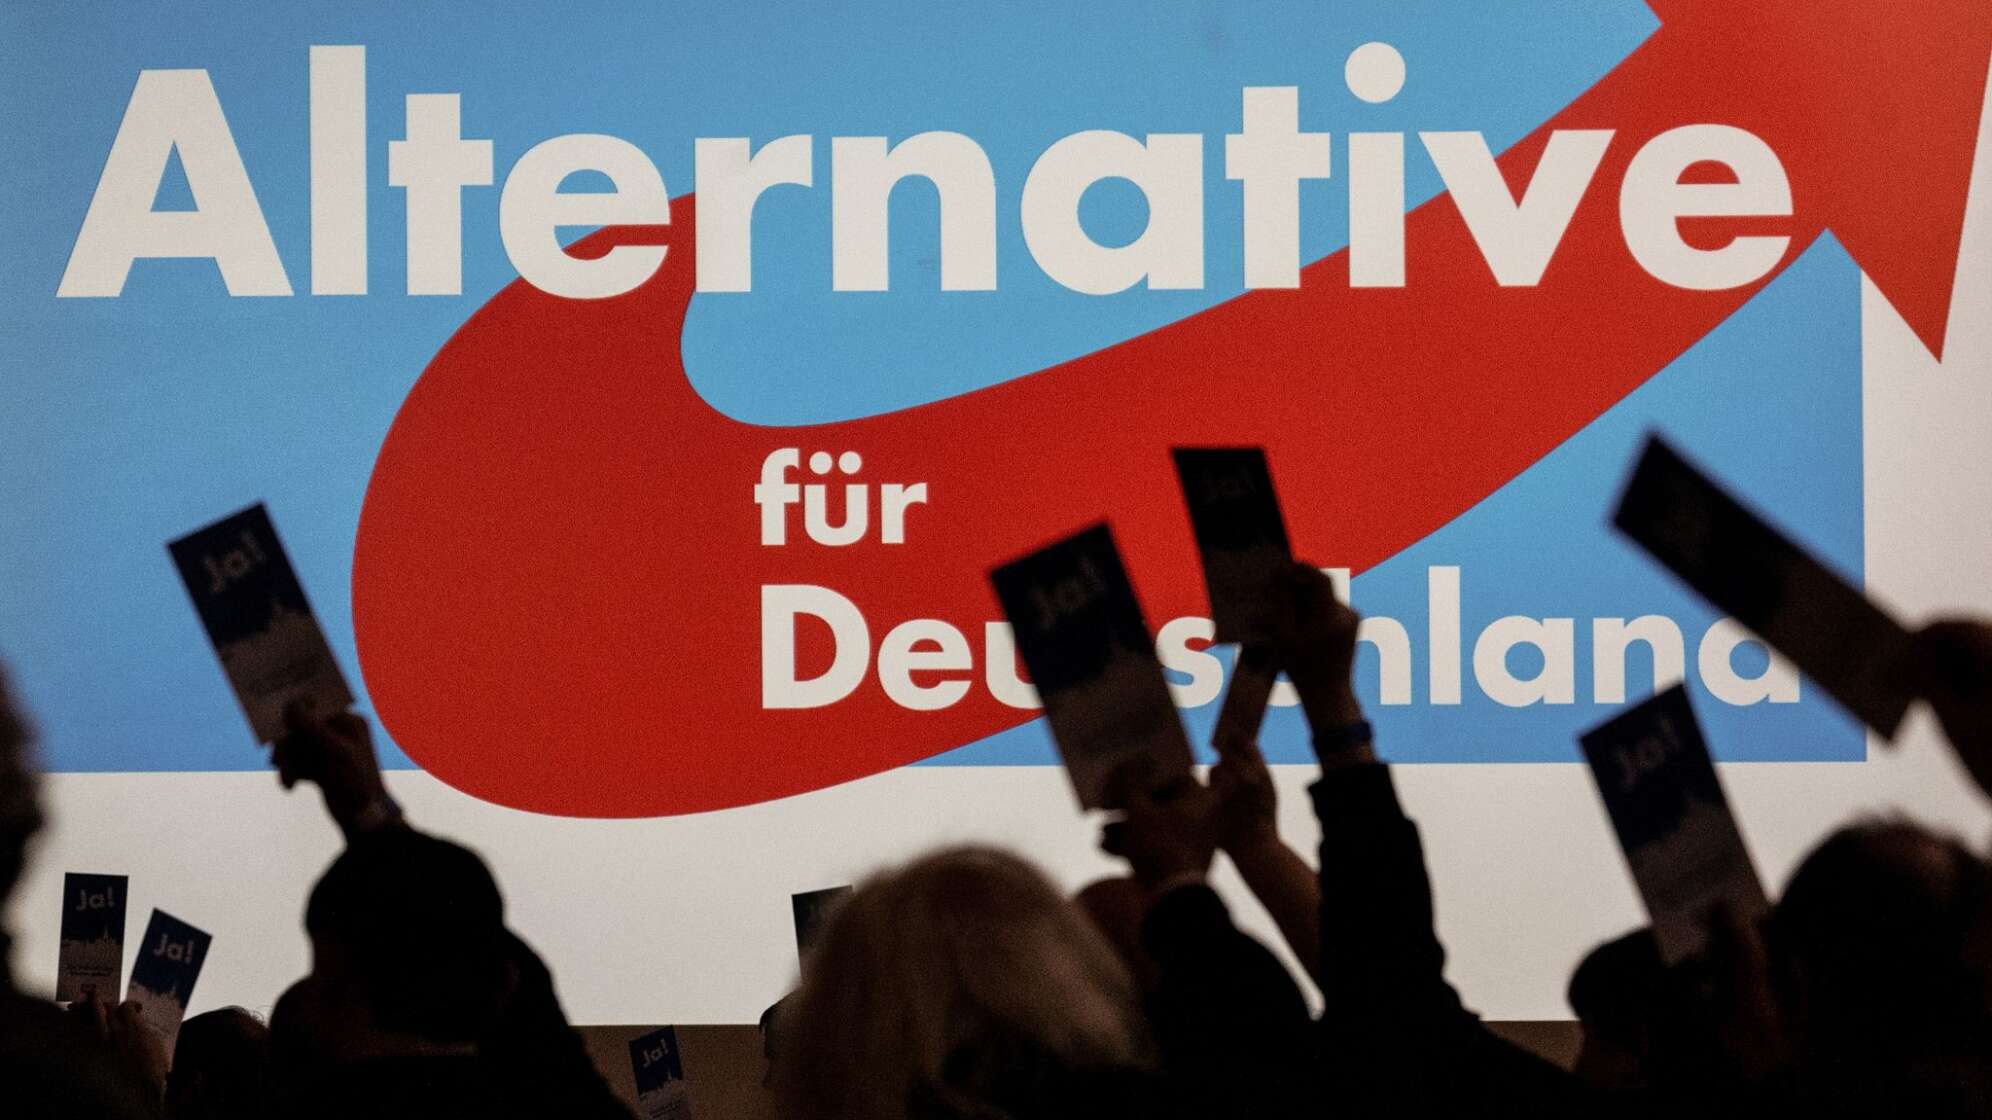 Forsa-Umfrage: AfD bei 19 Prozent und vor SPD